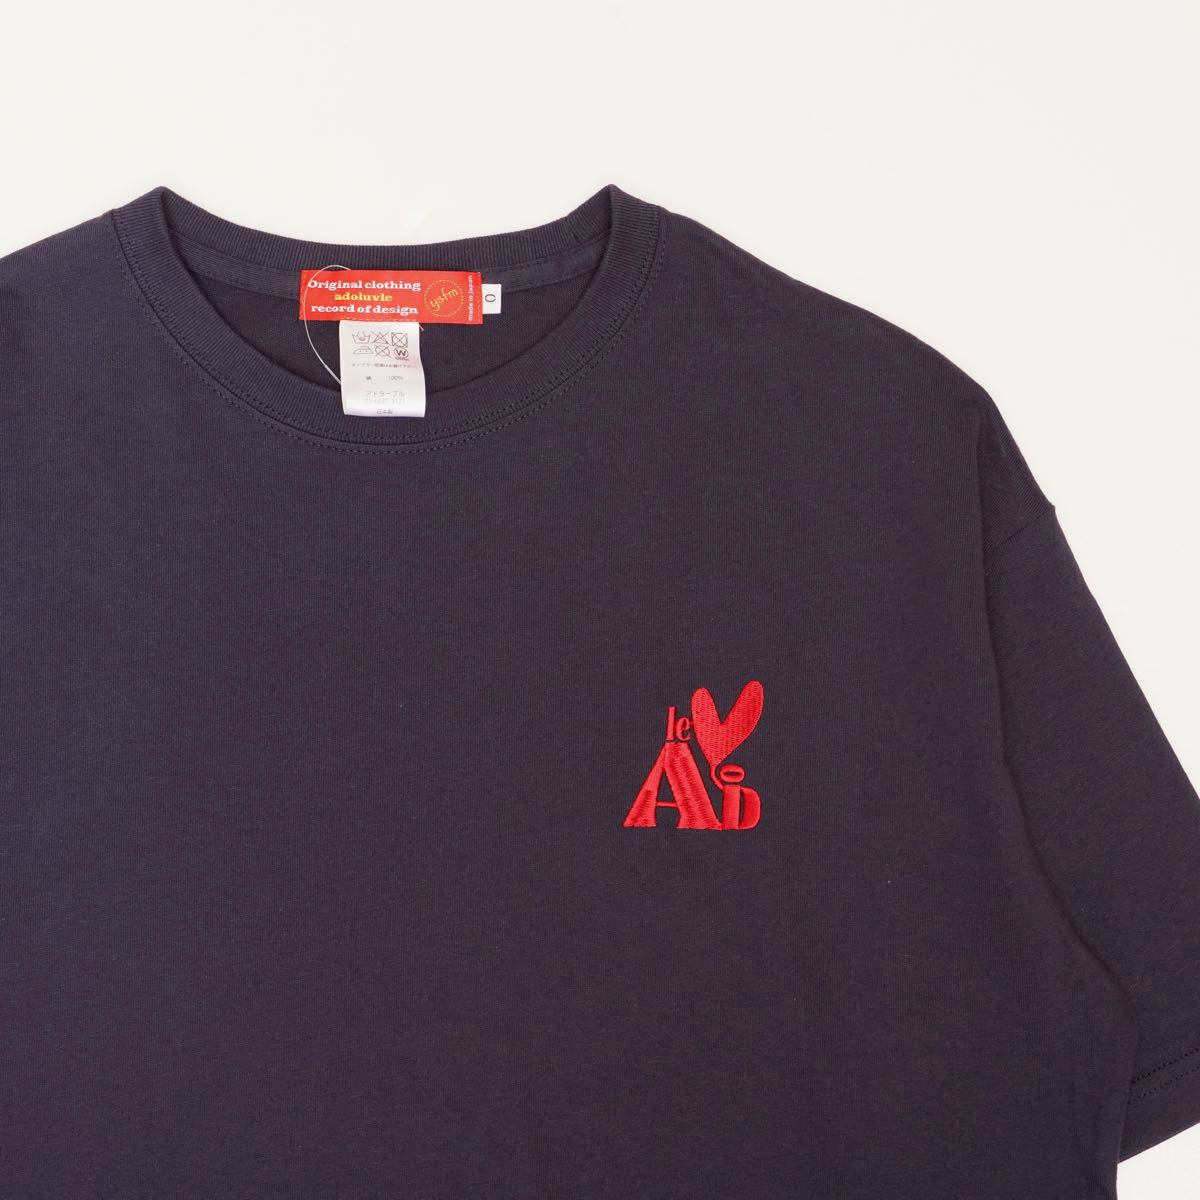 アドラーブル オリジナル ネイビー ビッグシルエット ロゴ Tシャツ ドロップショルダー ADOLUVLE ORIGINAL NAVY LOGO TEE DROP-SHOULDER LOOSE-FIT MADE IN JAPAN